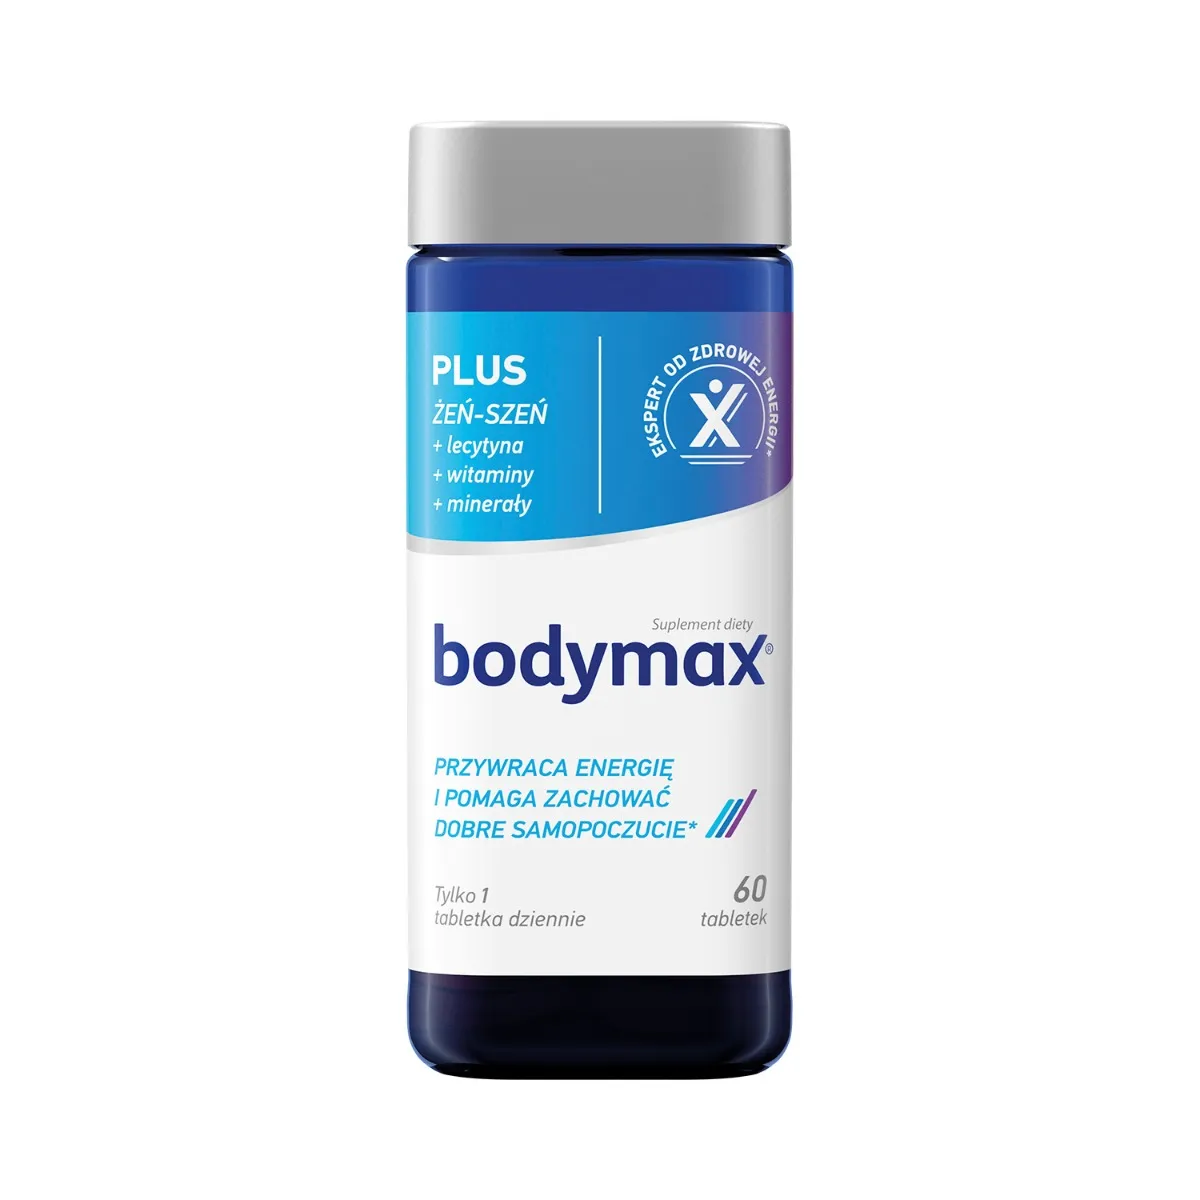 Bodymax Plus suplement diety, 60 tabletek